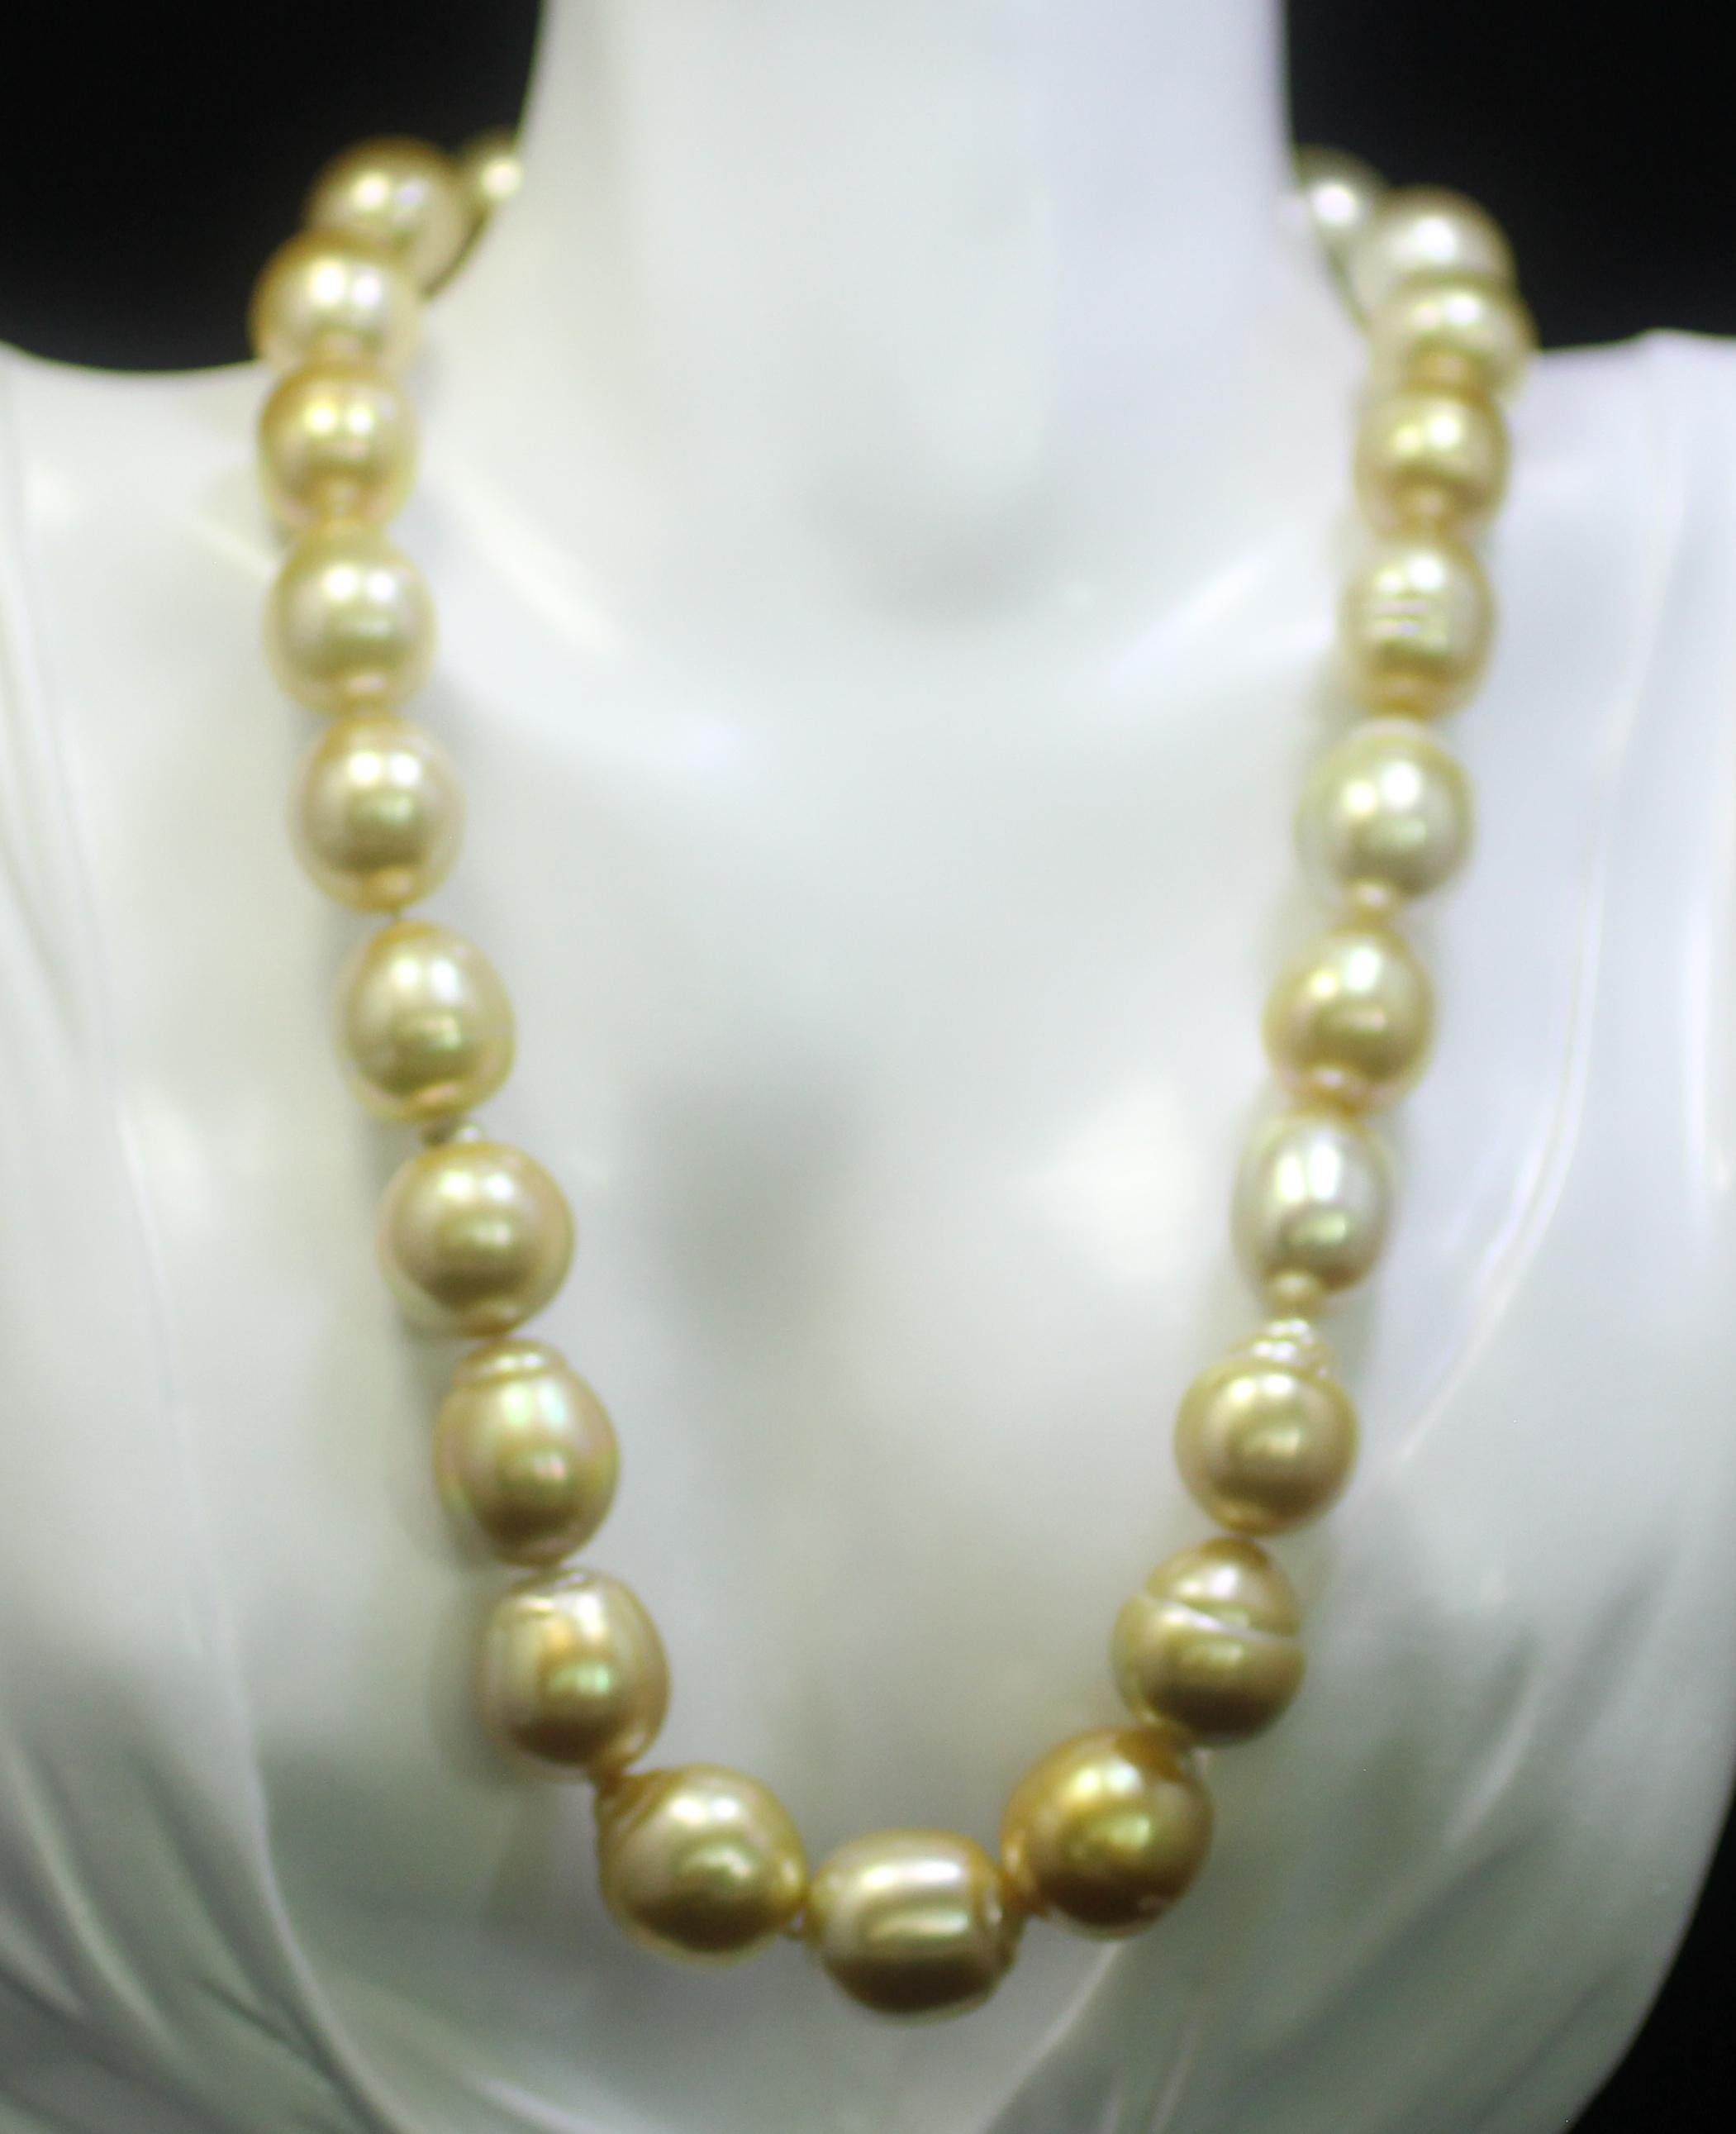 Hakimoto 18K Rare Collier de Perles Baroques des Mers du Sud de couleur or naturel profond
Or jaune 18K  
Poids (g) : 119
Perle de culture dorée des mers du Sud 
Taille de la perle : 12X16mm 
Forme de la perle : Baroque 
Couleur de la carrosserie :